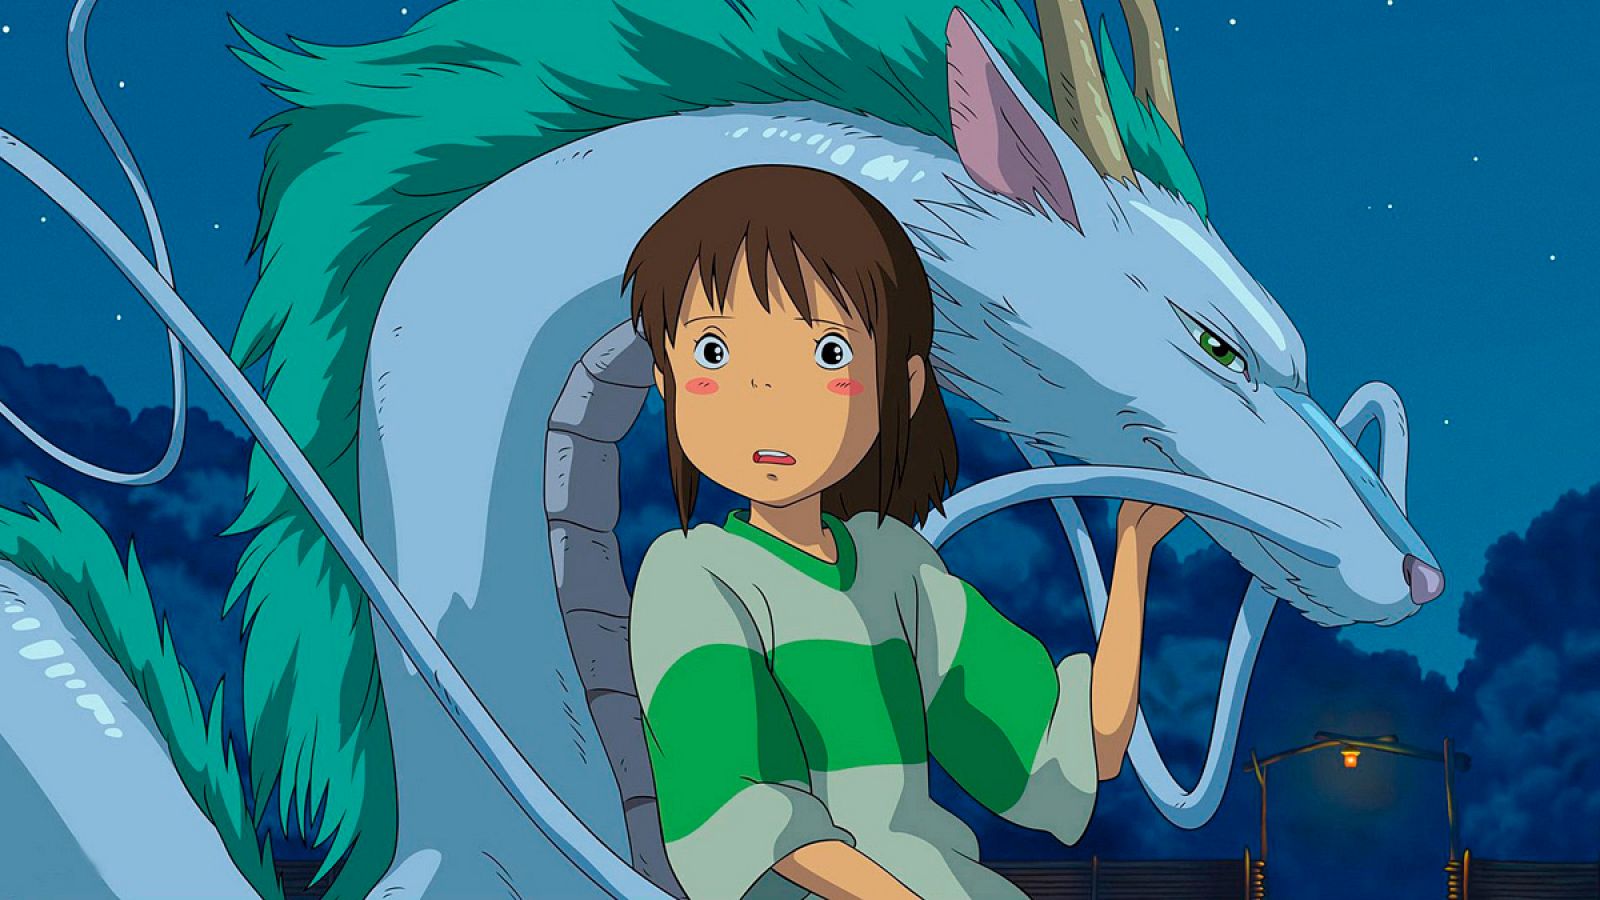 Chihiro y Haku, el niño dragón, protagonistas de 'El viaje de Chihiro'